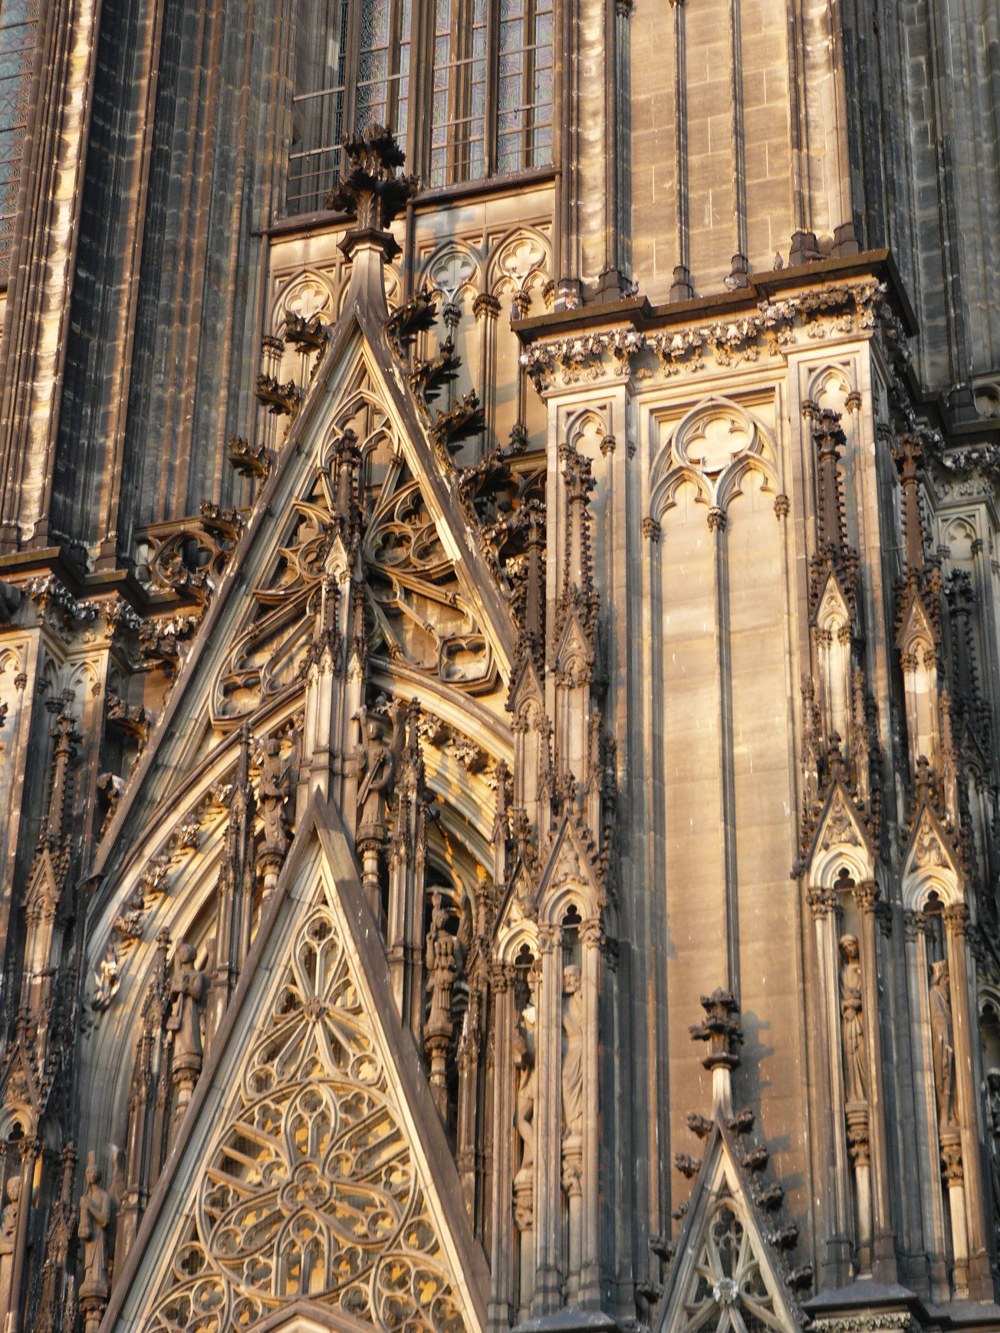 Dom Köln - Cologne Cathedral